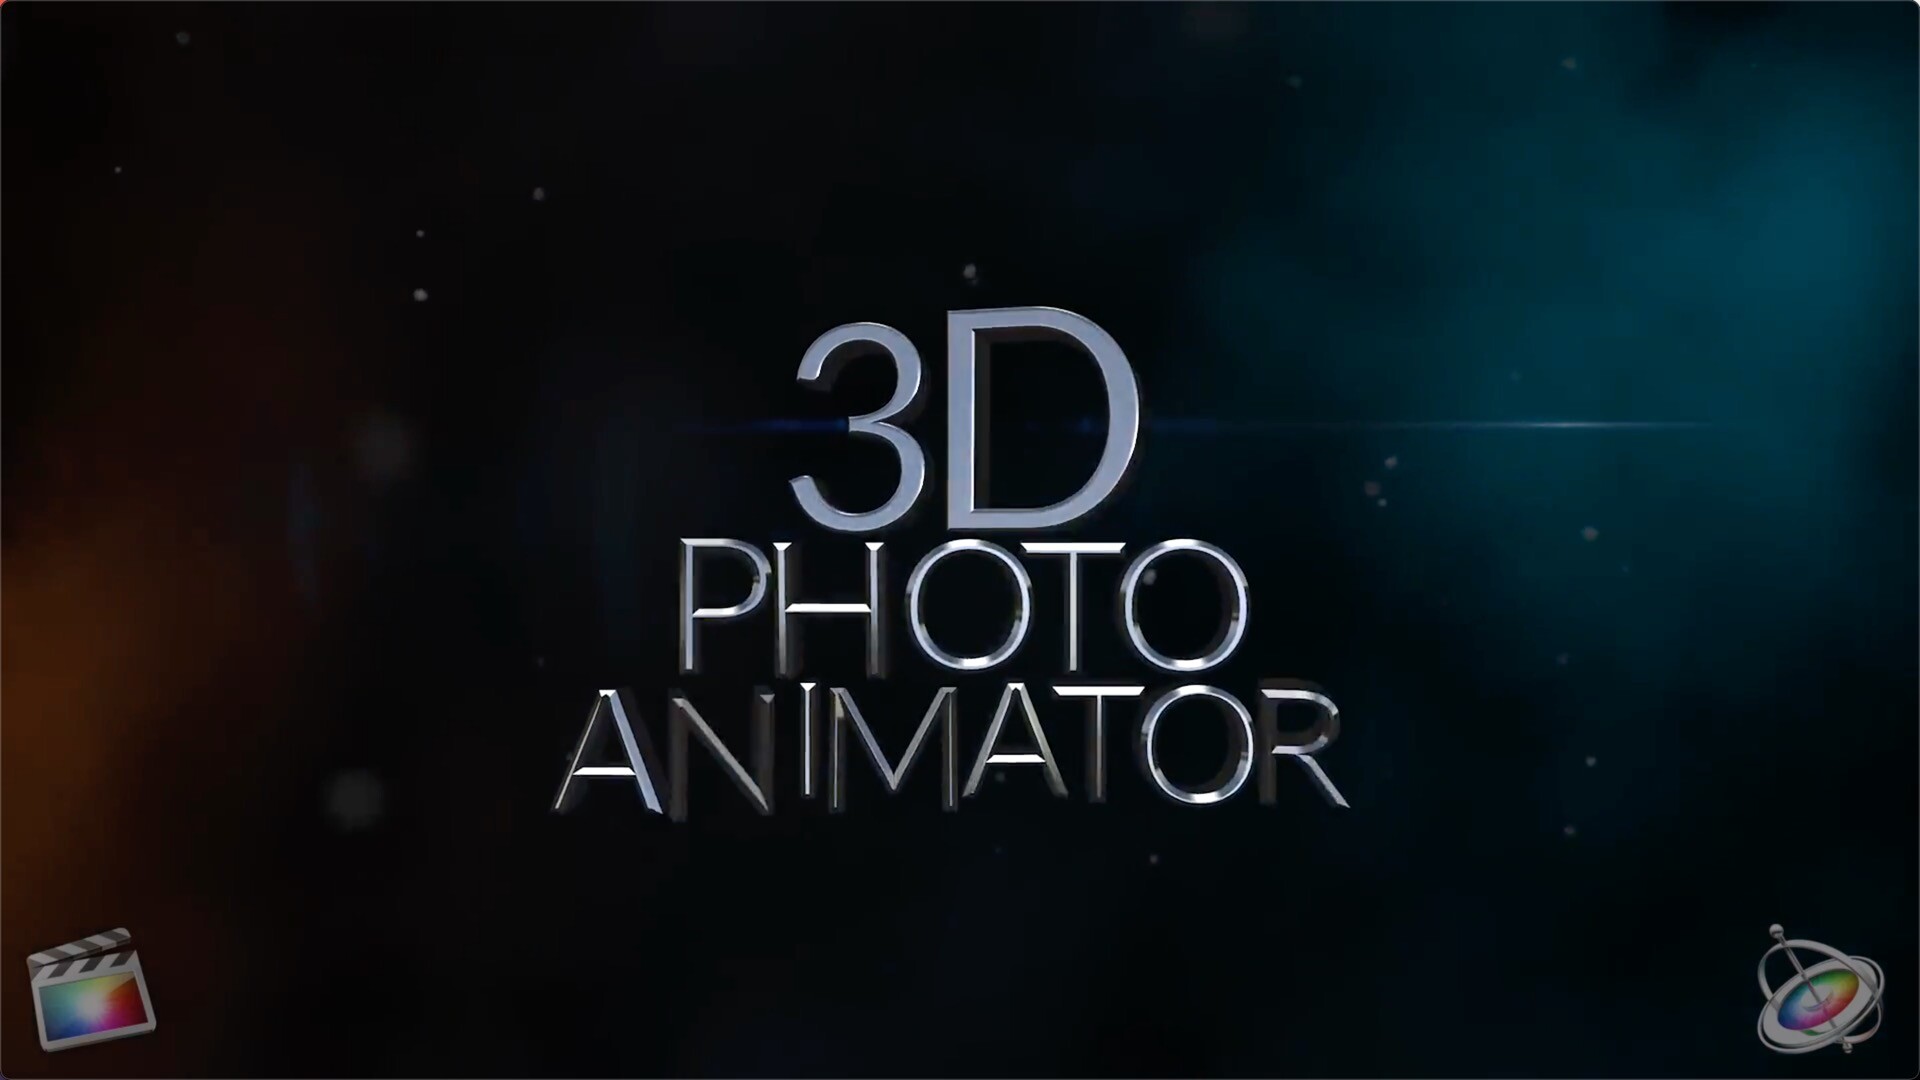 FCPX插件3D Photo Animator 3D照片动画制作器